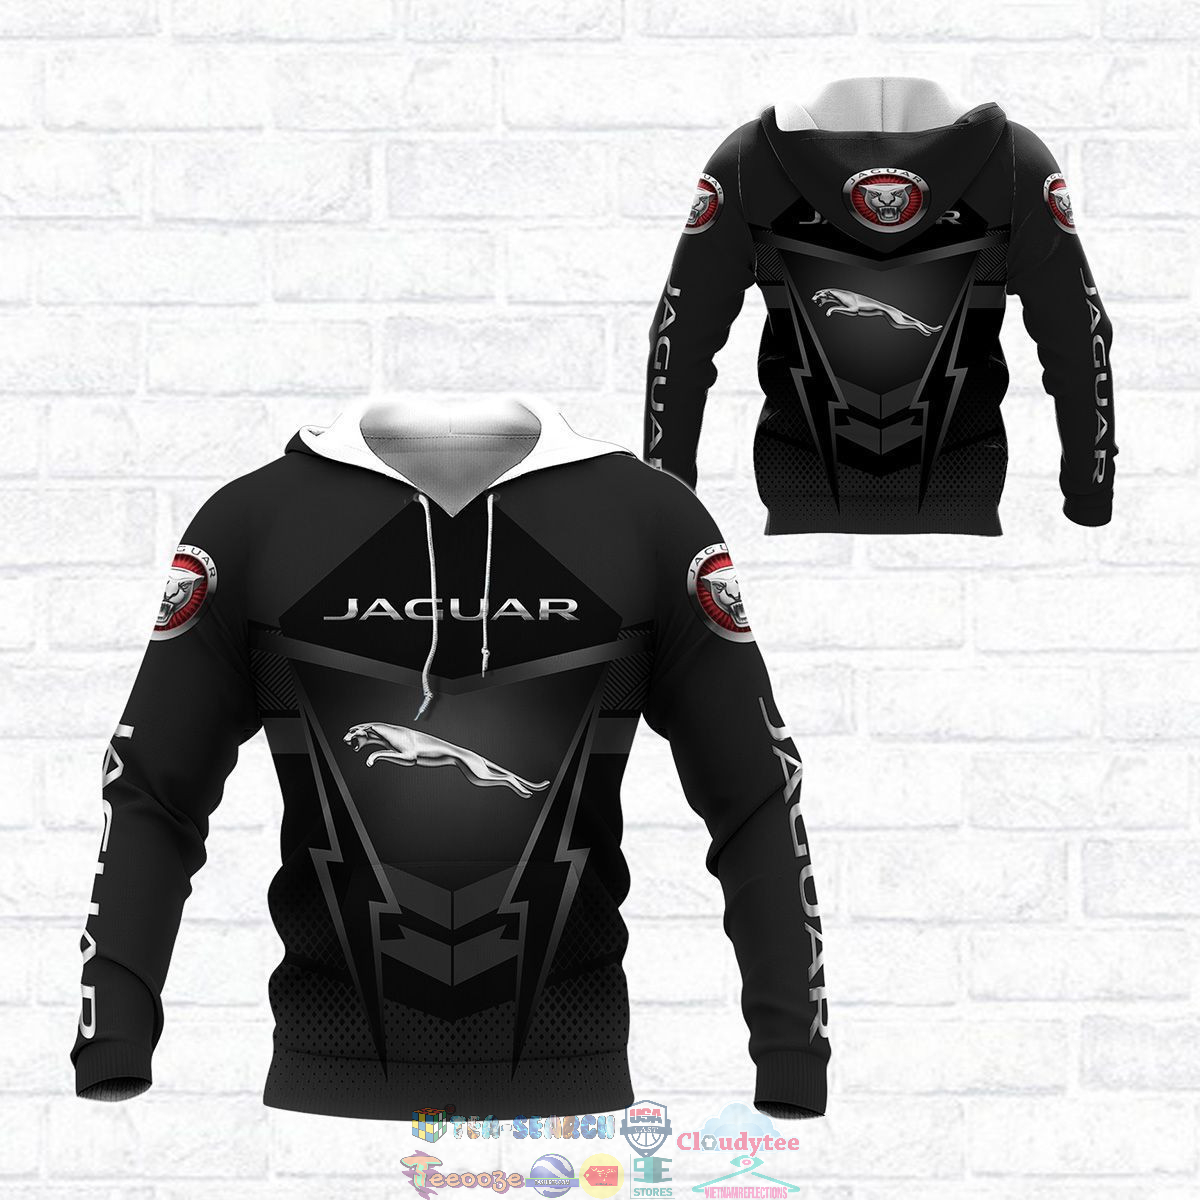 Jaguar ver 12 3D hoodie and t-shirt – Saleoff